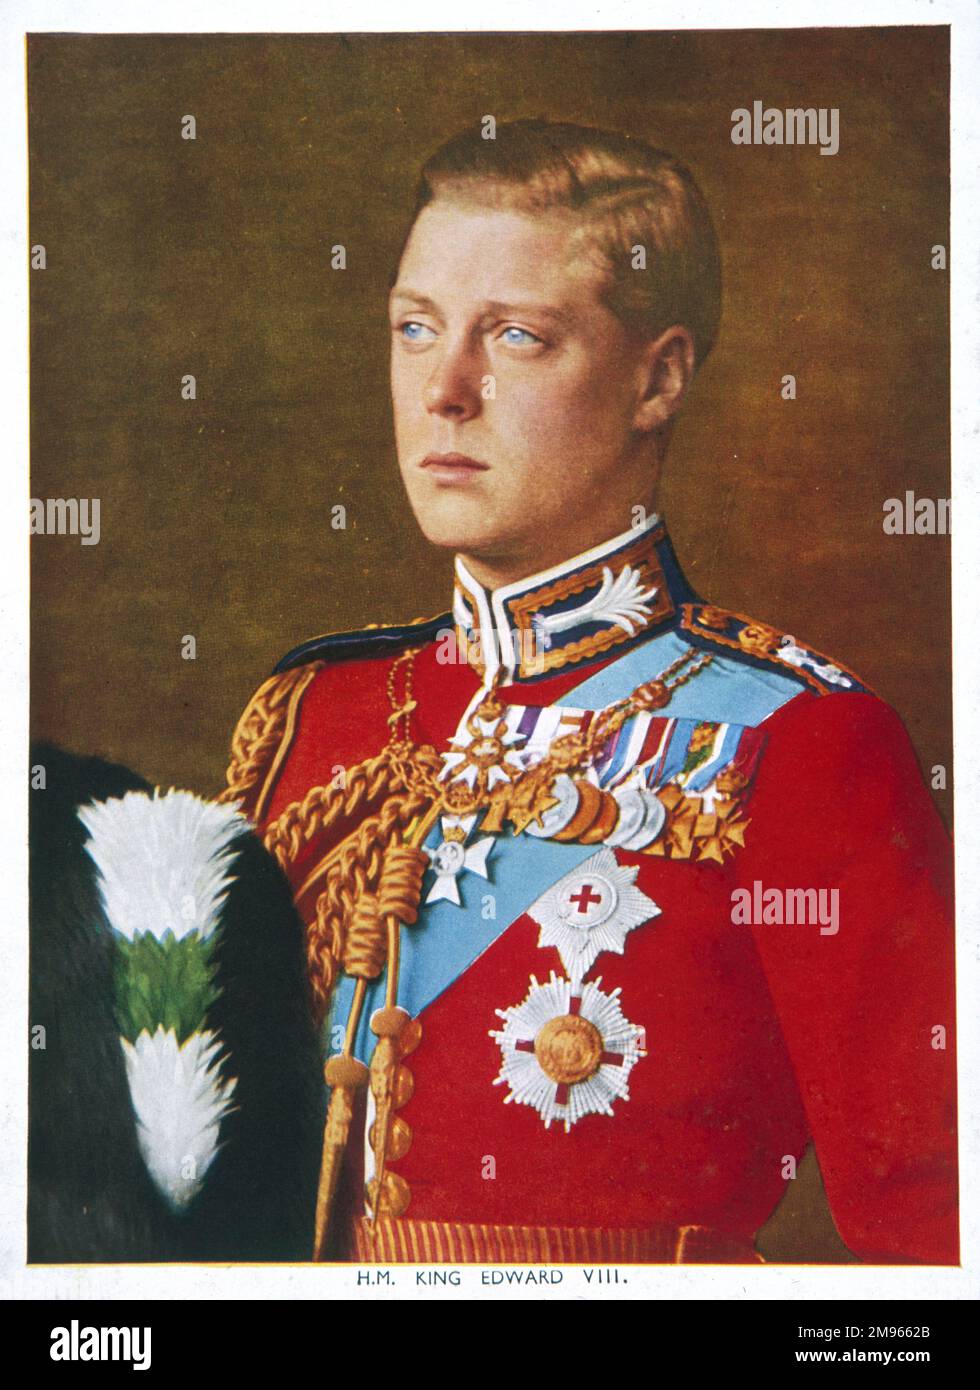 EDWARD VIII Portrait of King Edward VIII, later Duke of Windsor photogrpahed in full dress uniform. Stock Photo